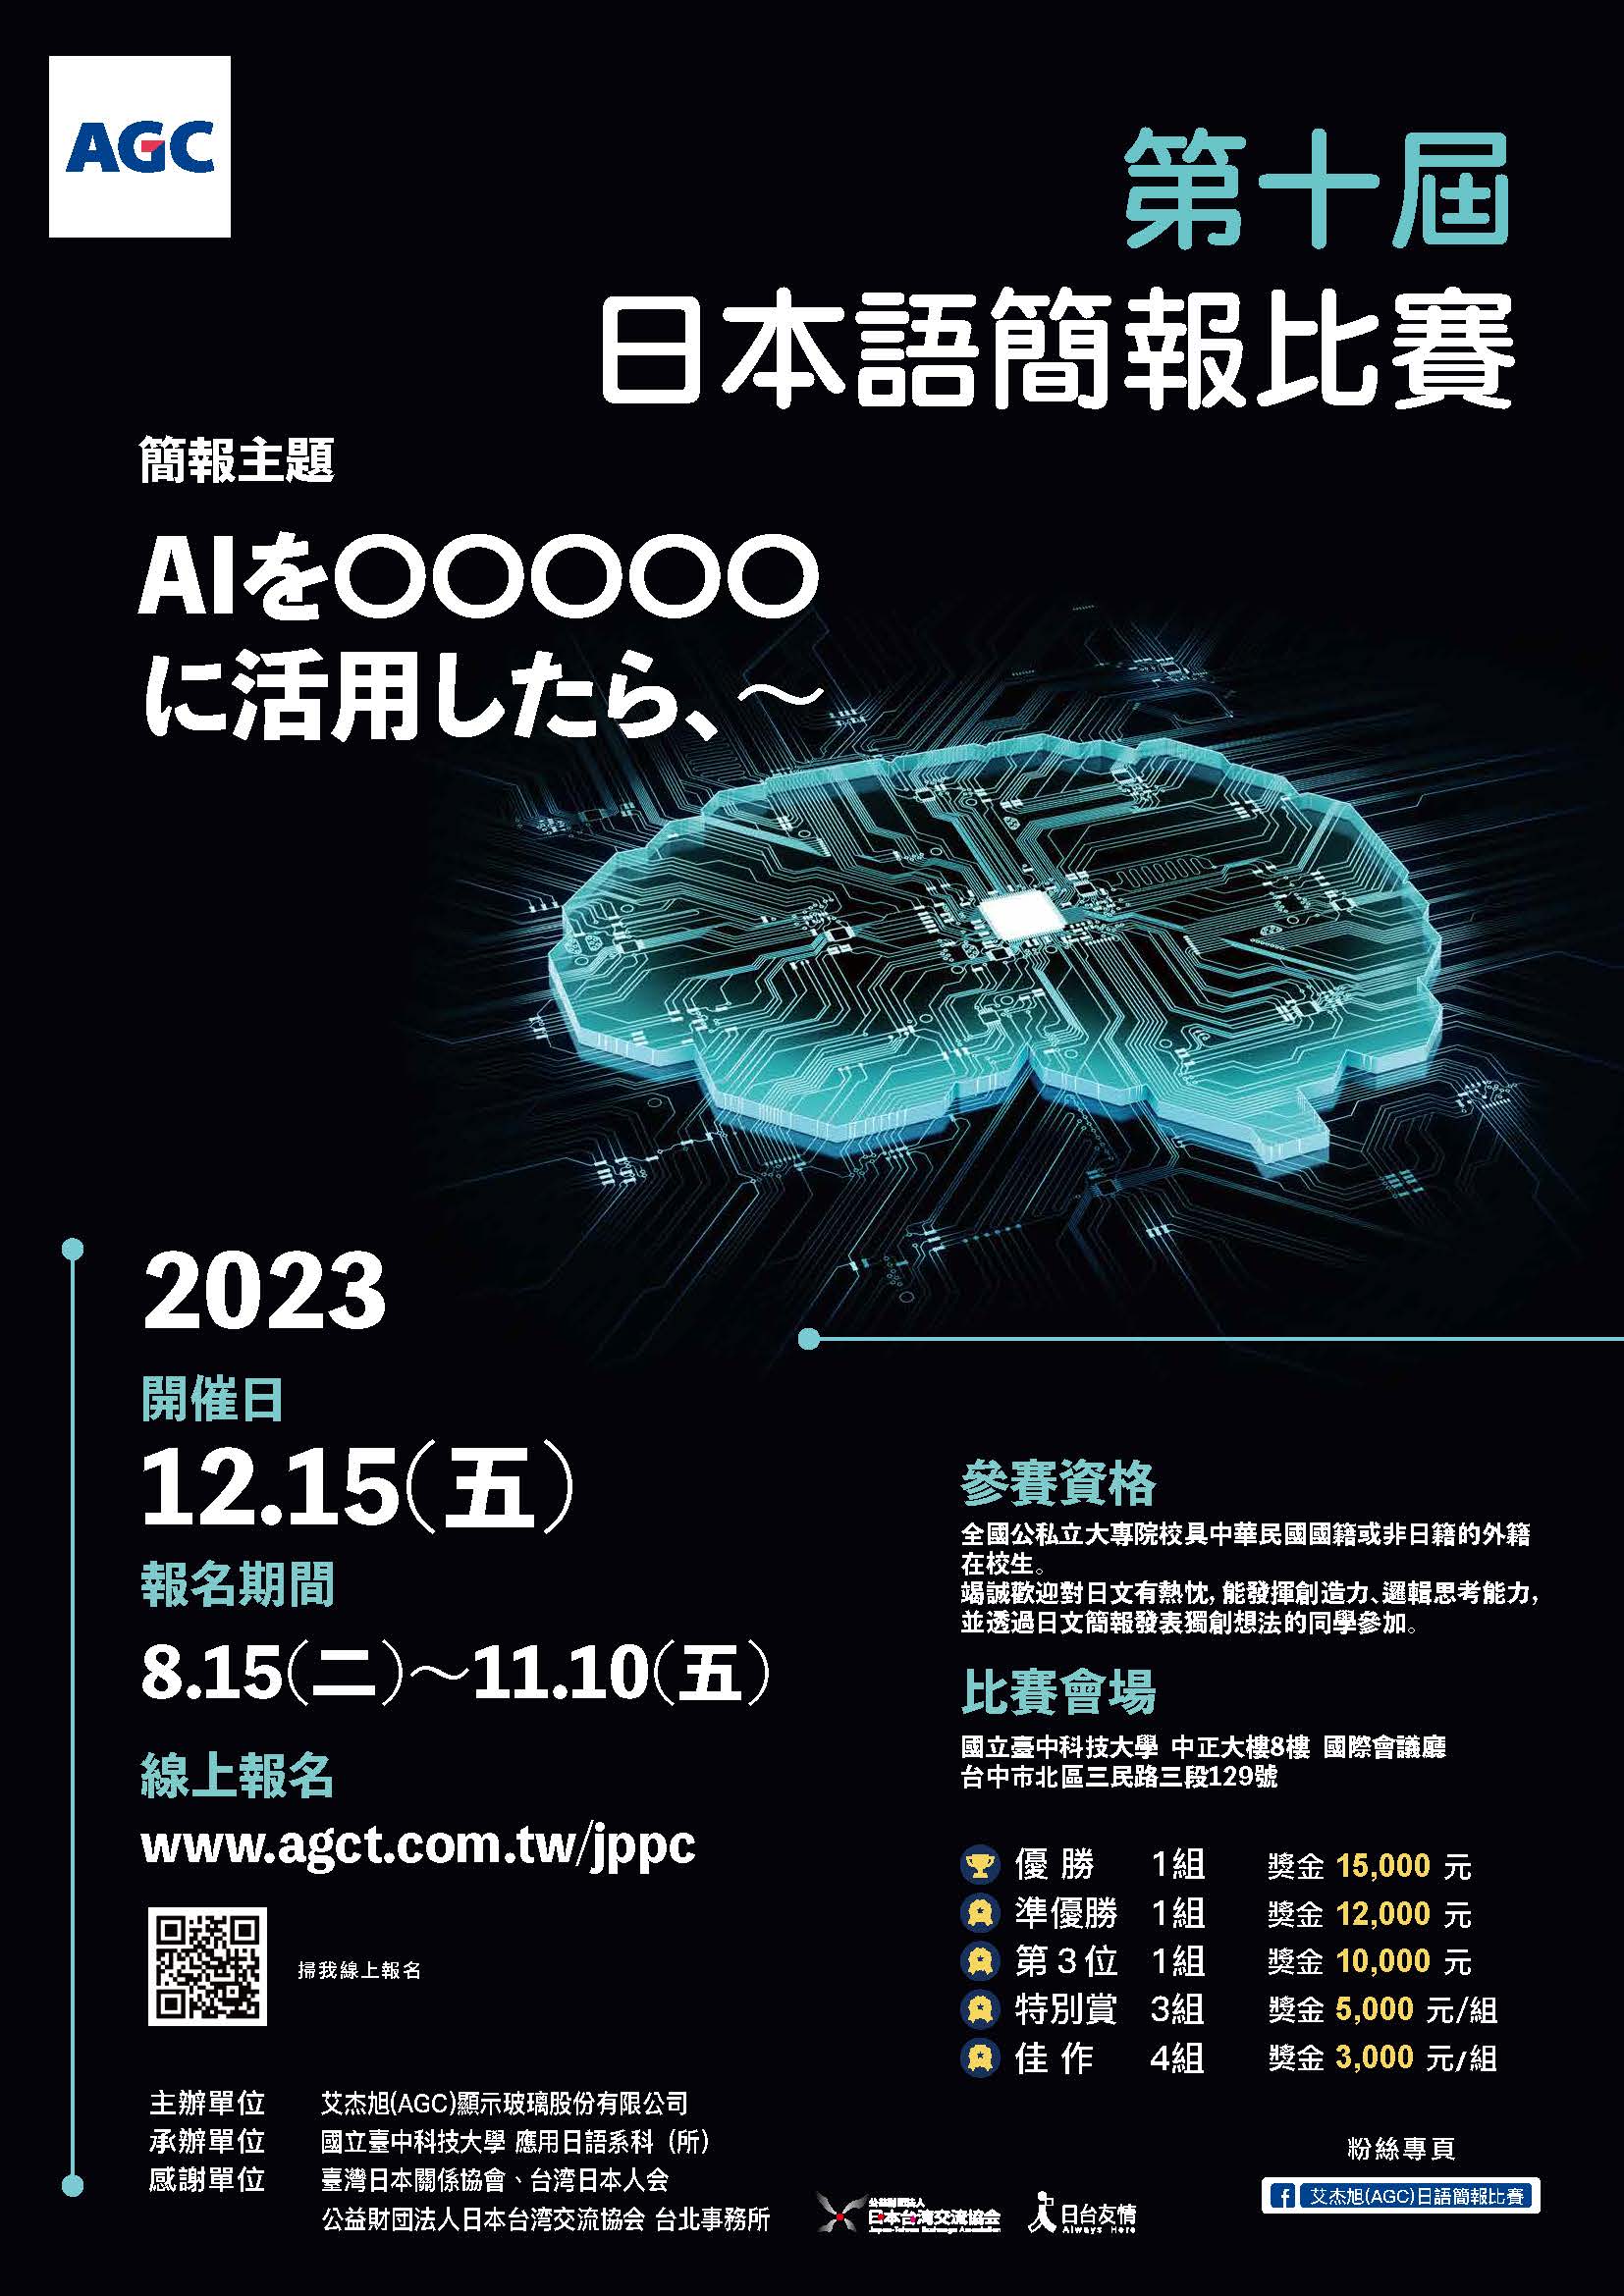 【比賽訊息】2023年AGC第十屆日語簡報比賽